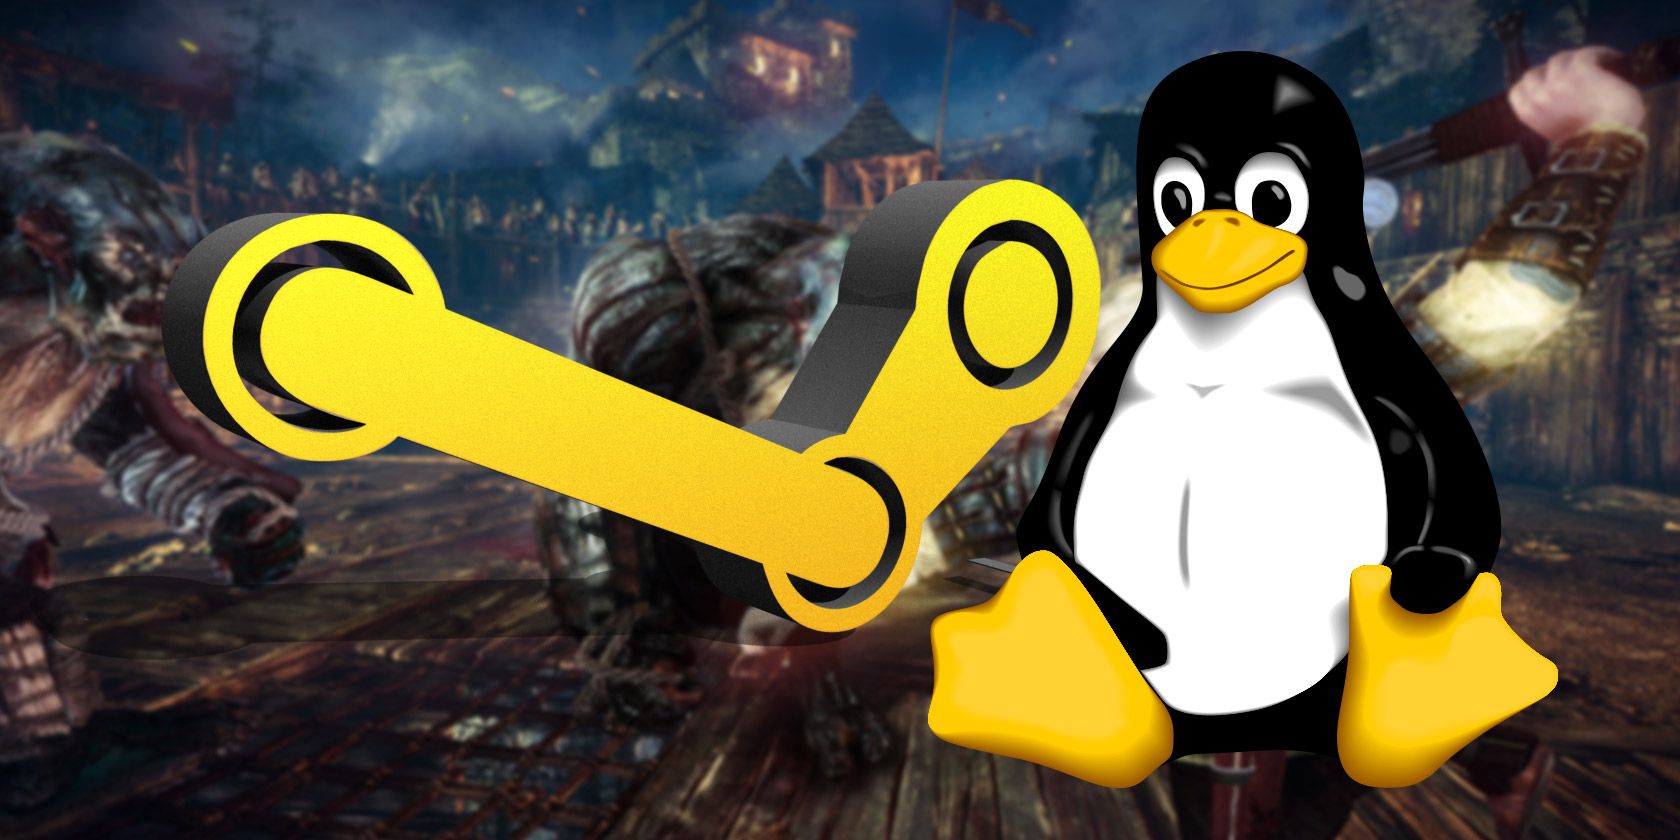 Steam Community :: :: Club Penguin